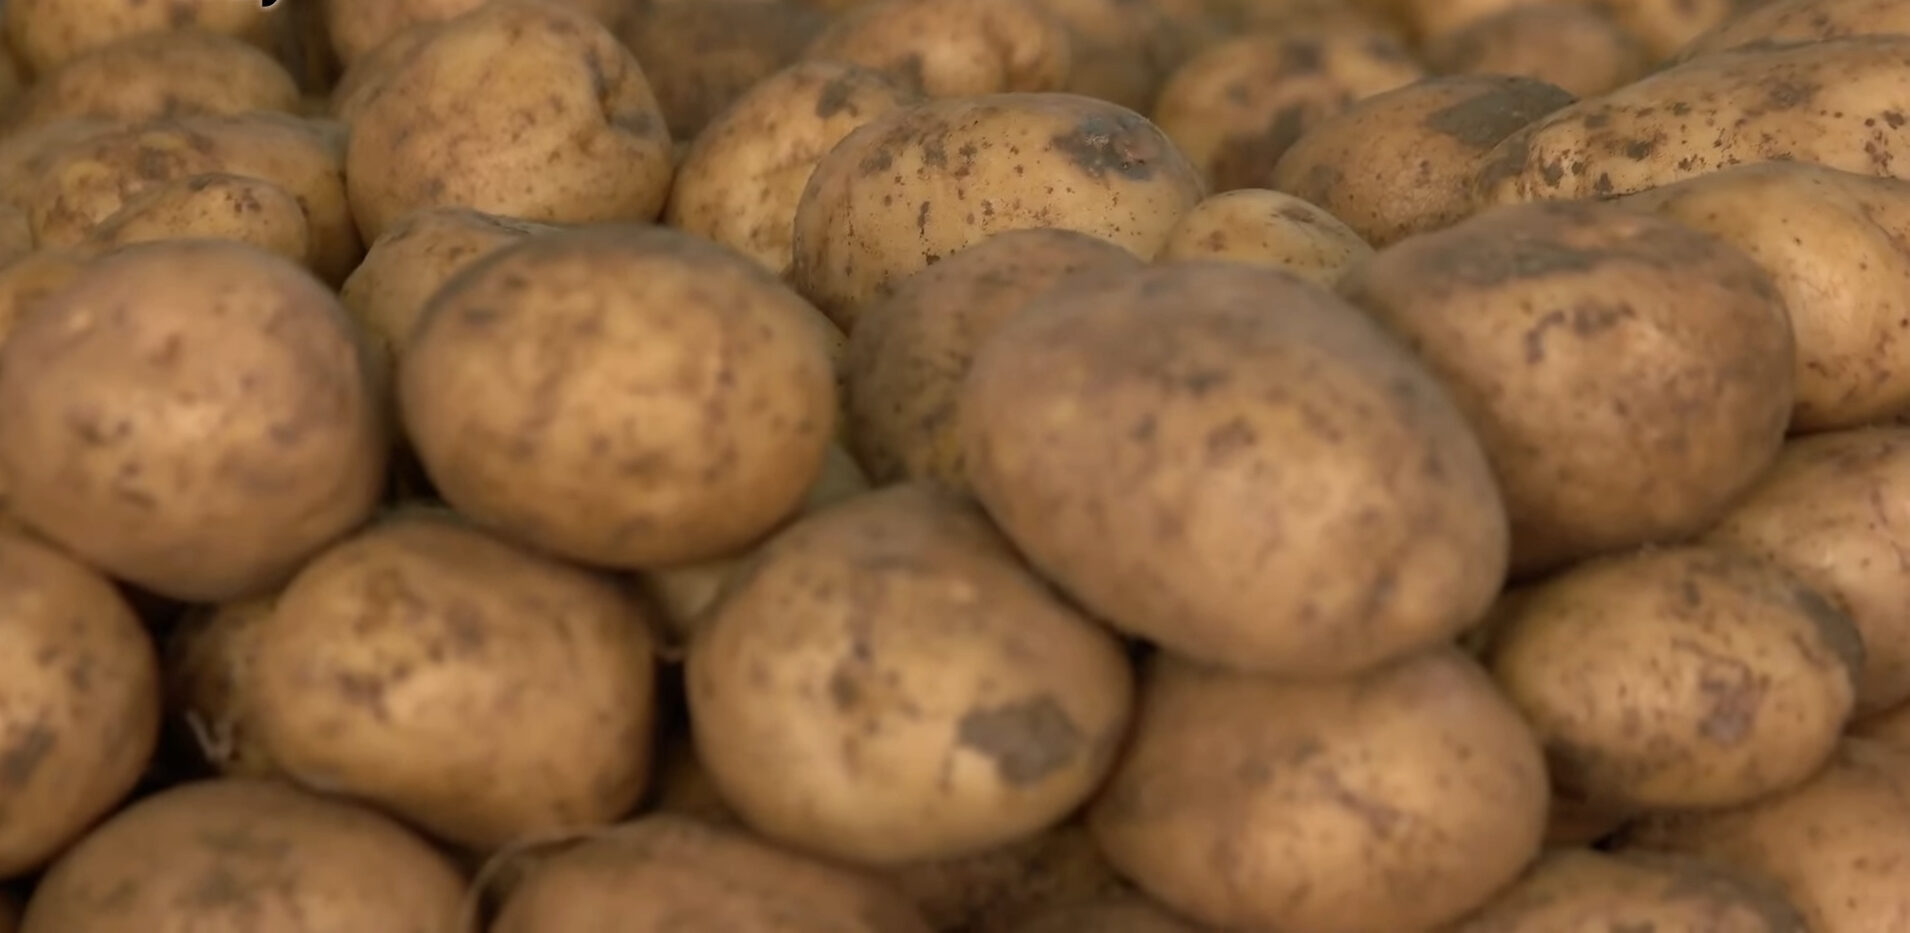 Експерти розповіли хитрий спосіб посадки картоплі для щедрого врожаю